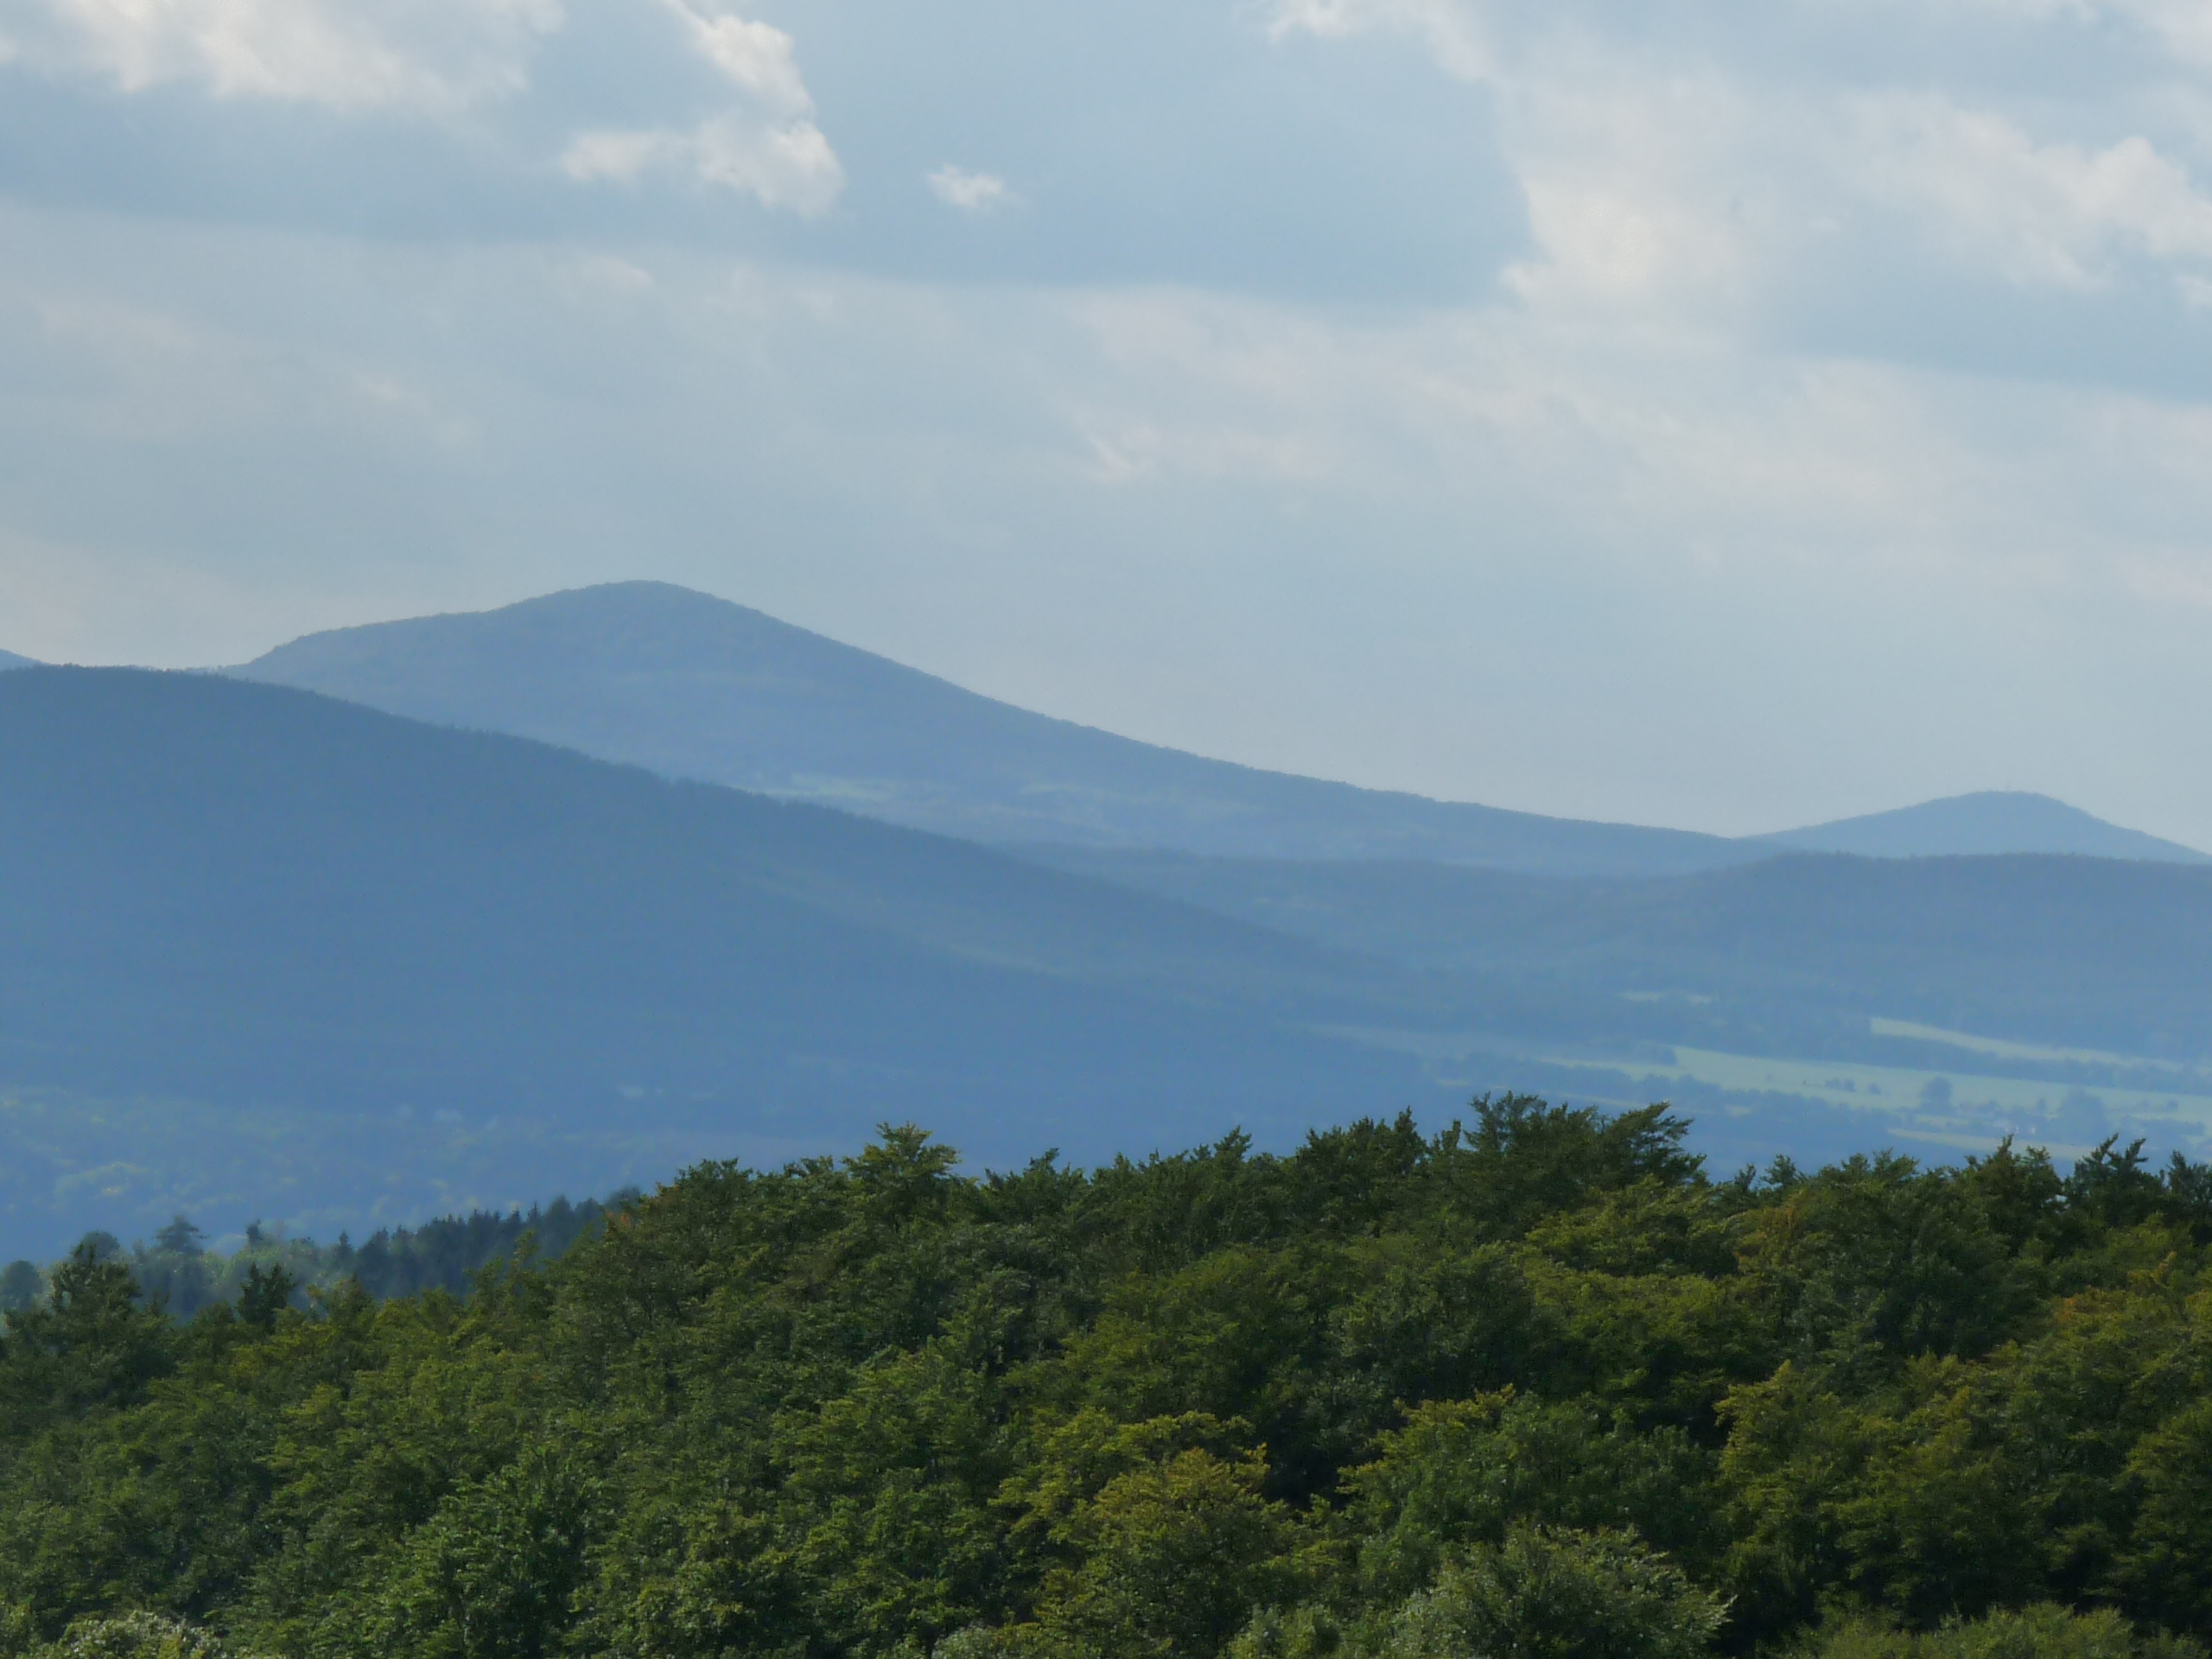 Wandertipps für die Wanderregion Inselsberg /Thueringerwald, hier  traumhafte Aussicht  von der Hohen Klinge/Trusetal